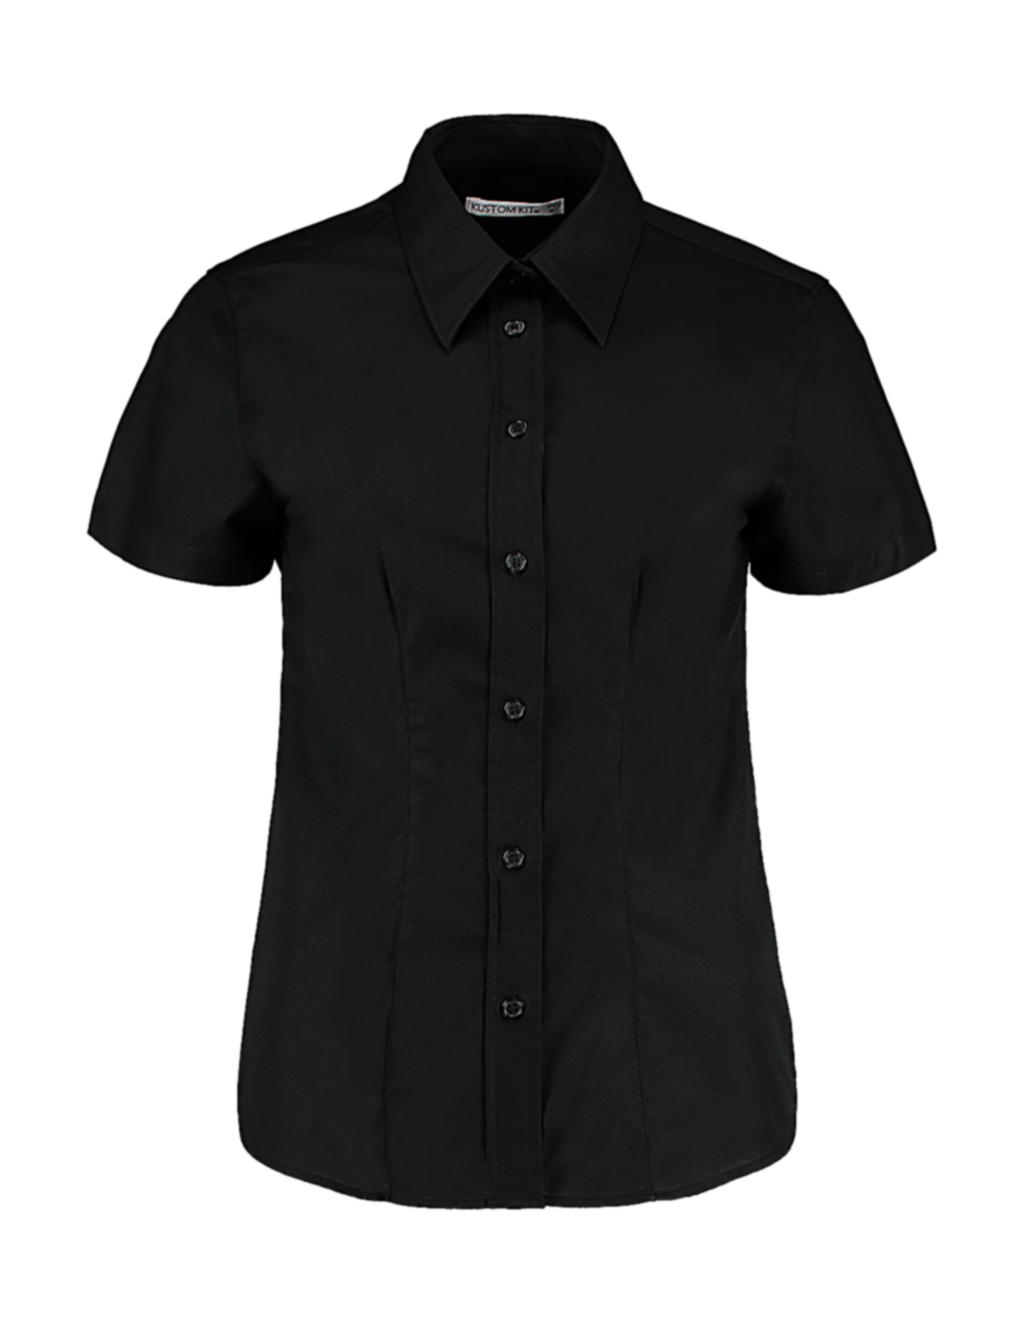 Blúzka Workwear Oxford - black